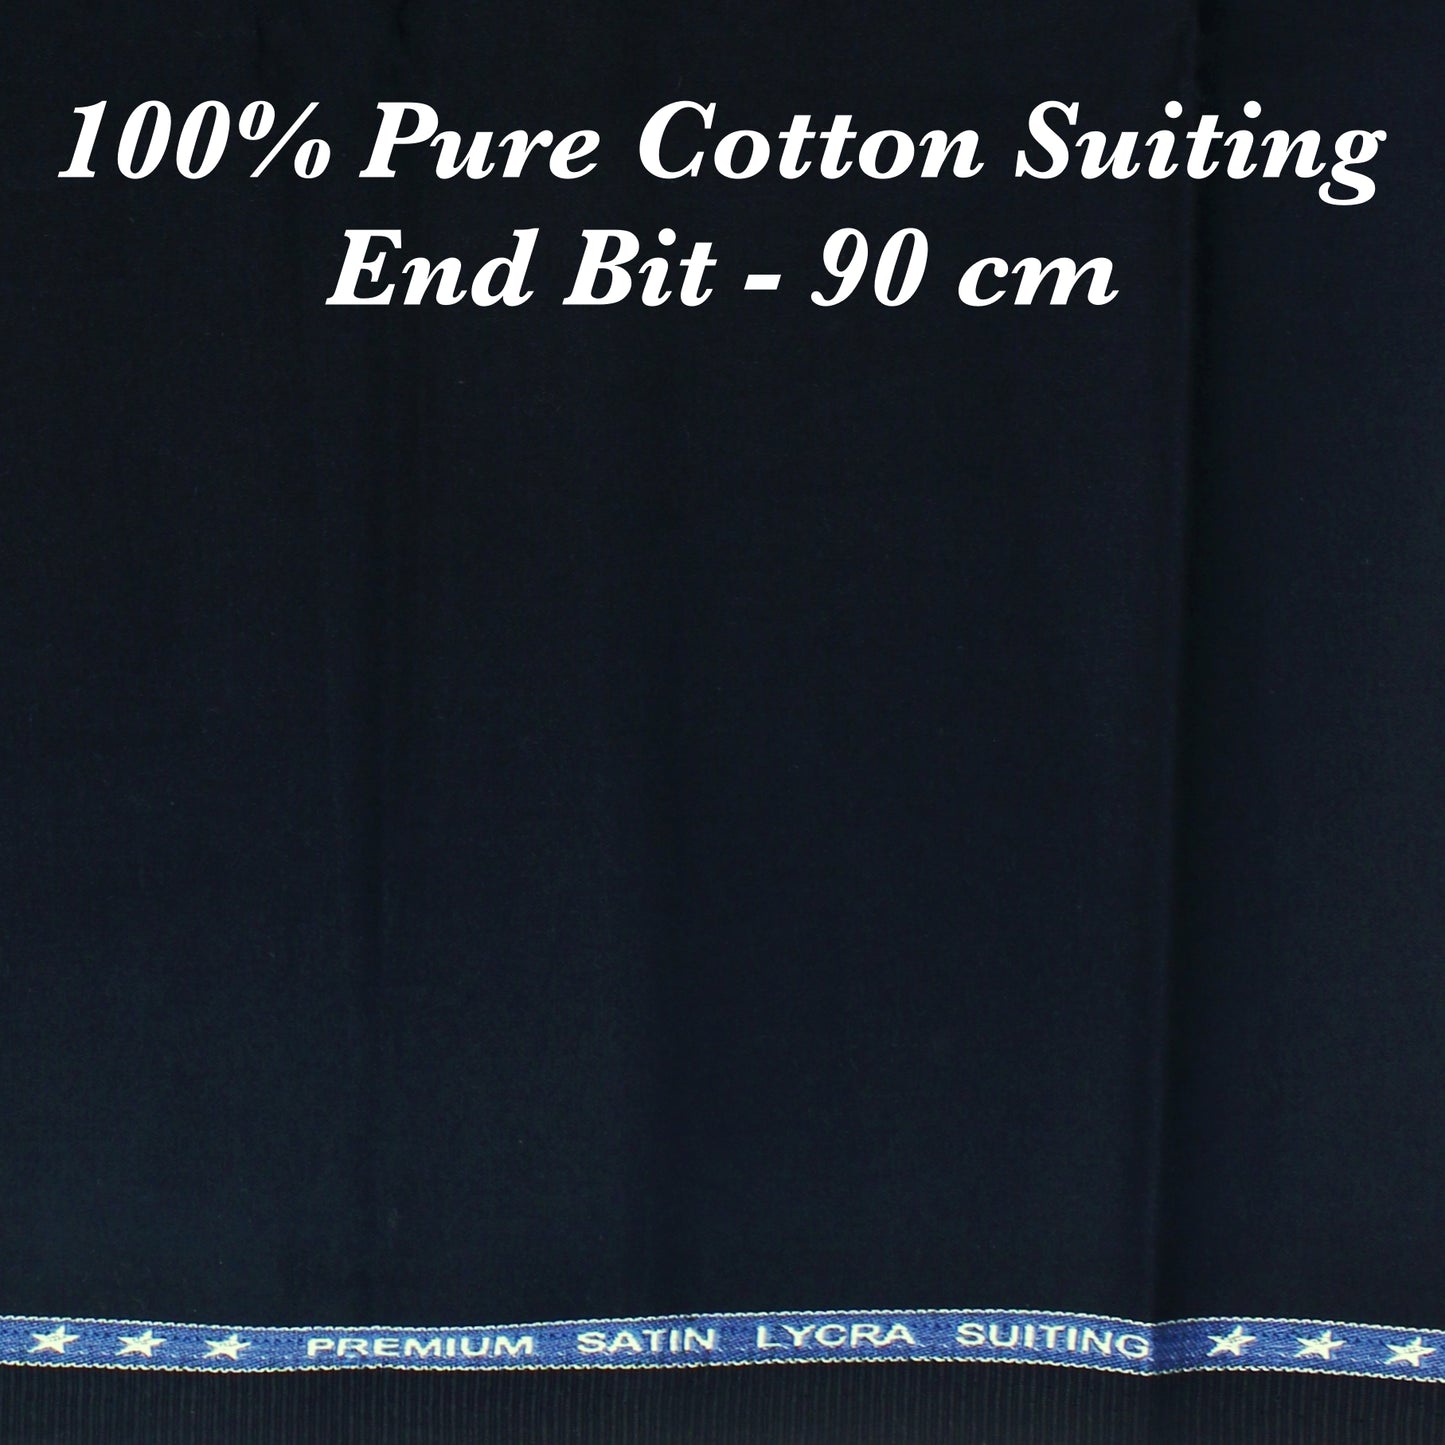 90 Cm Pure Cotton Suiting - END BIT (50%)